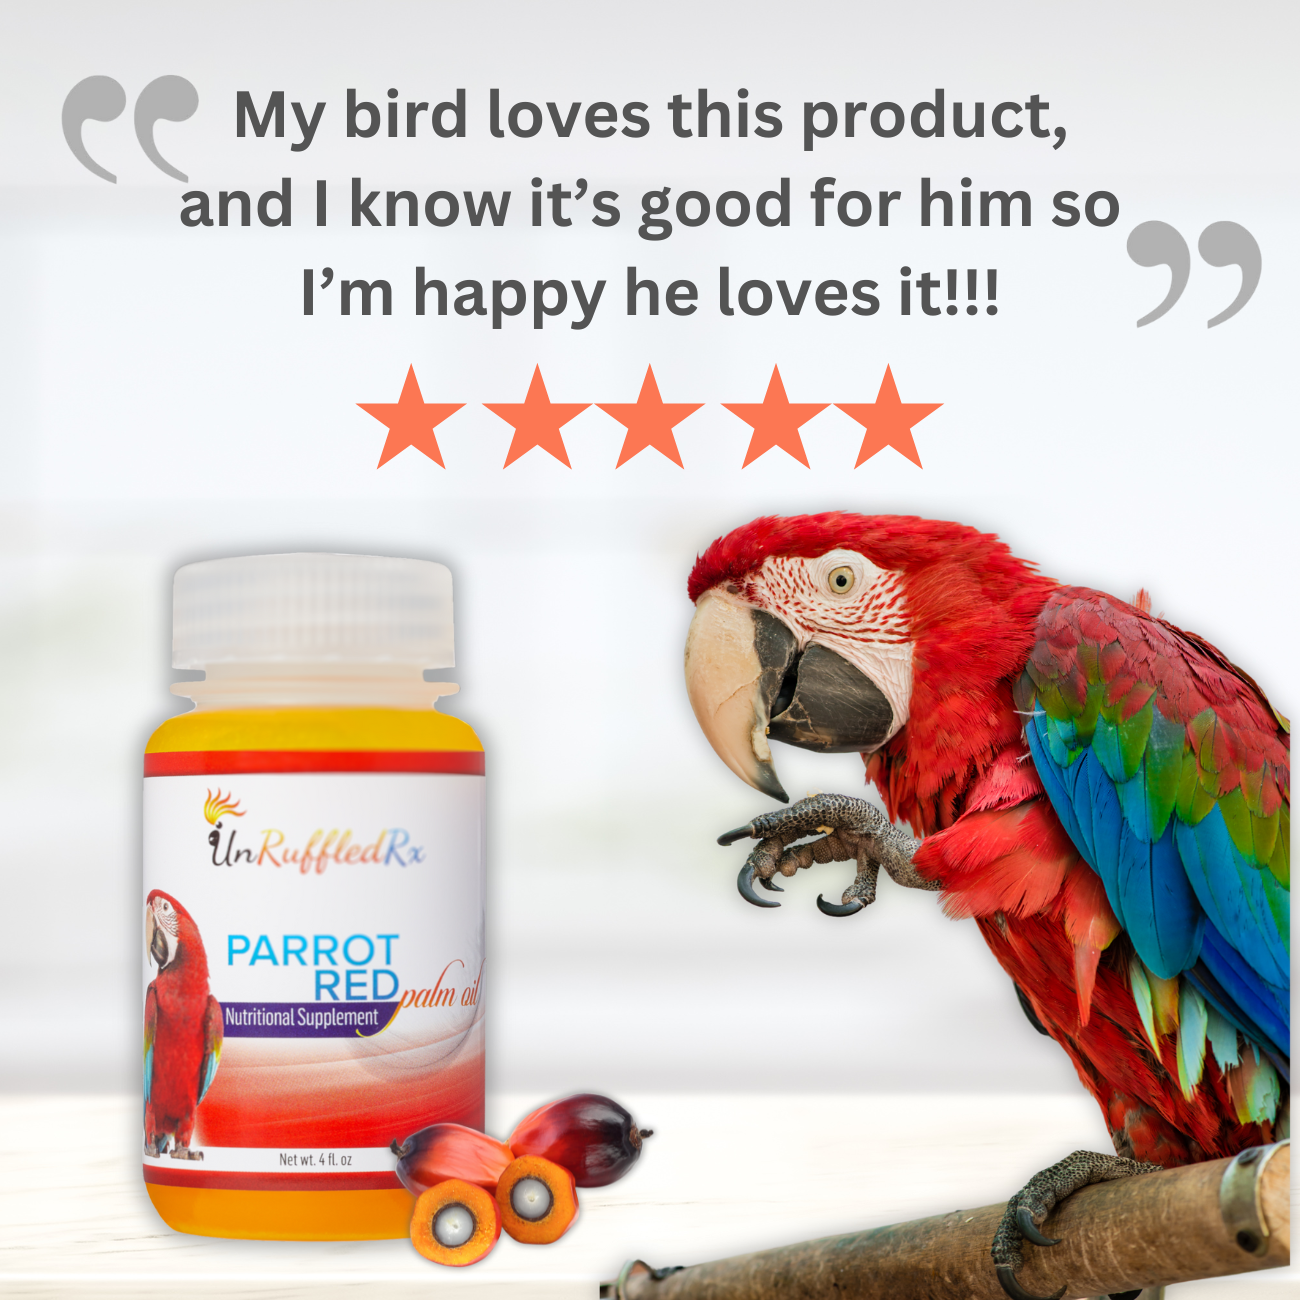 UnRuffledRx Red Palm Oil for Birds, 4 oz. - BirdSupplies.com